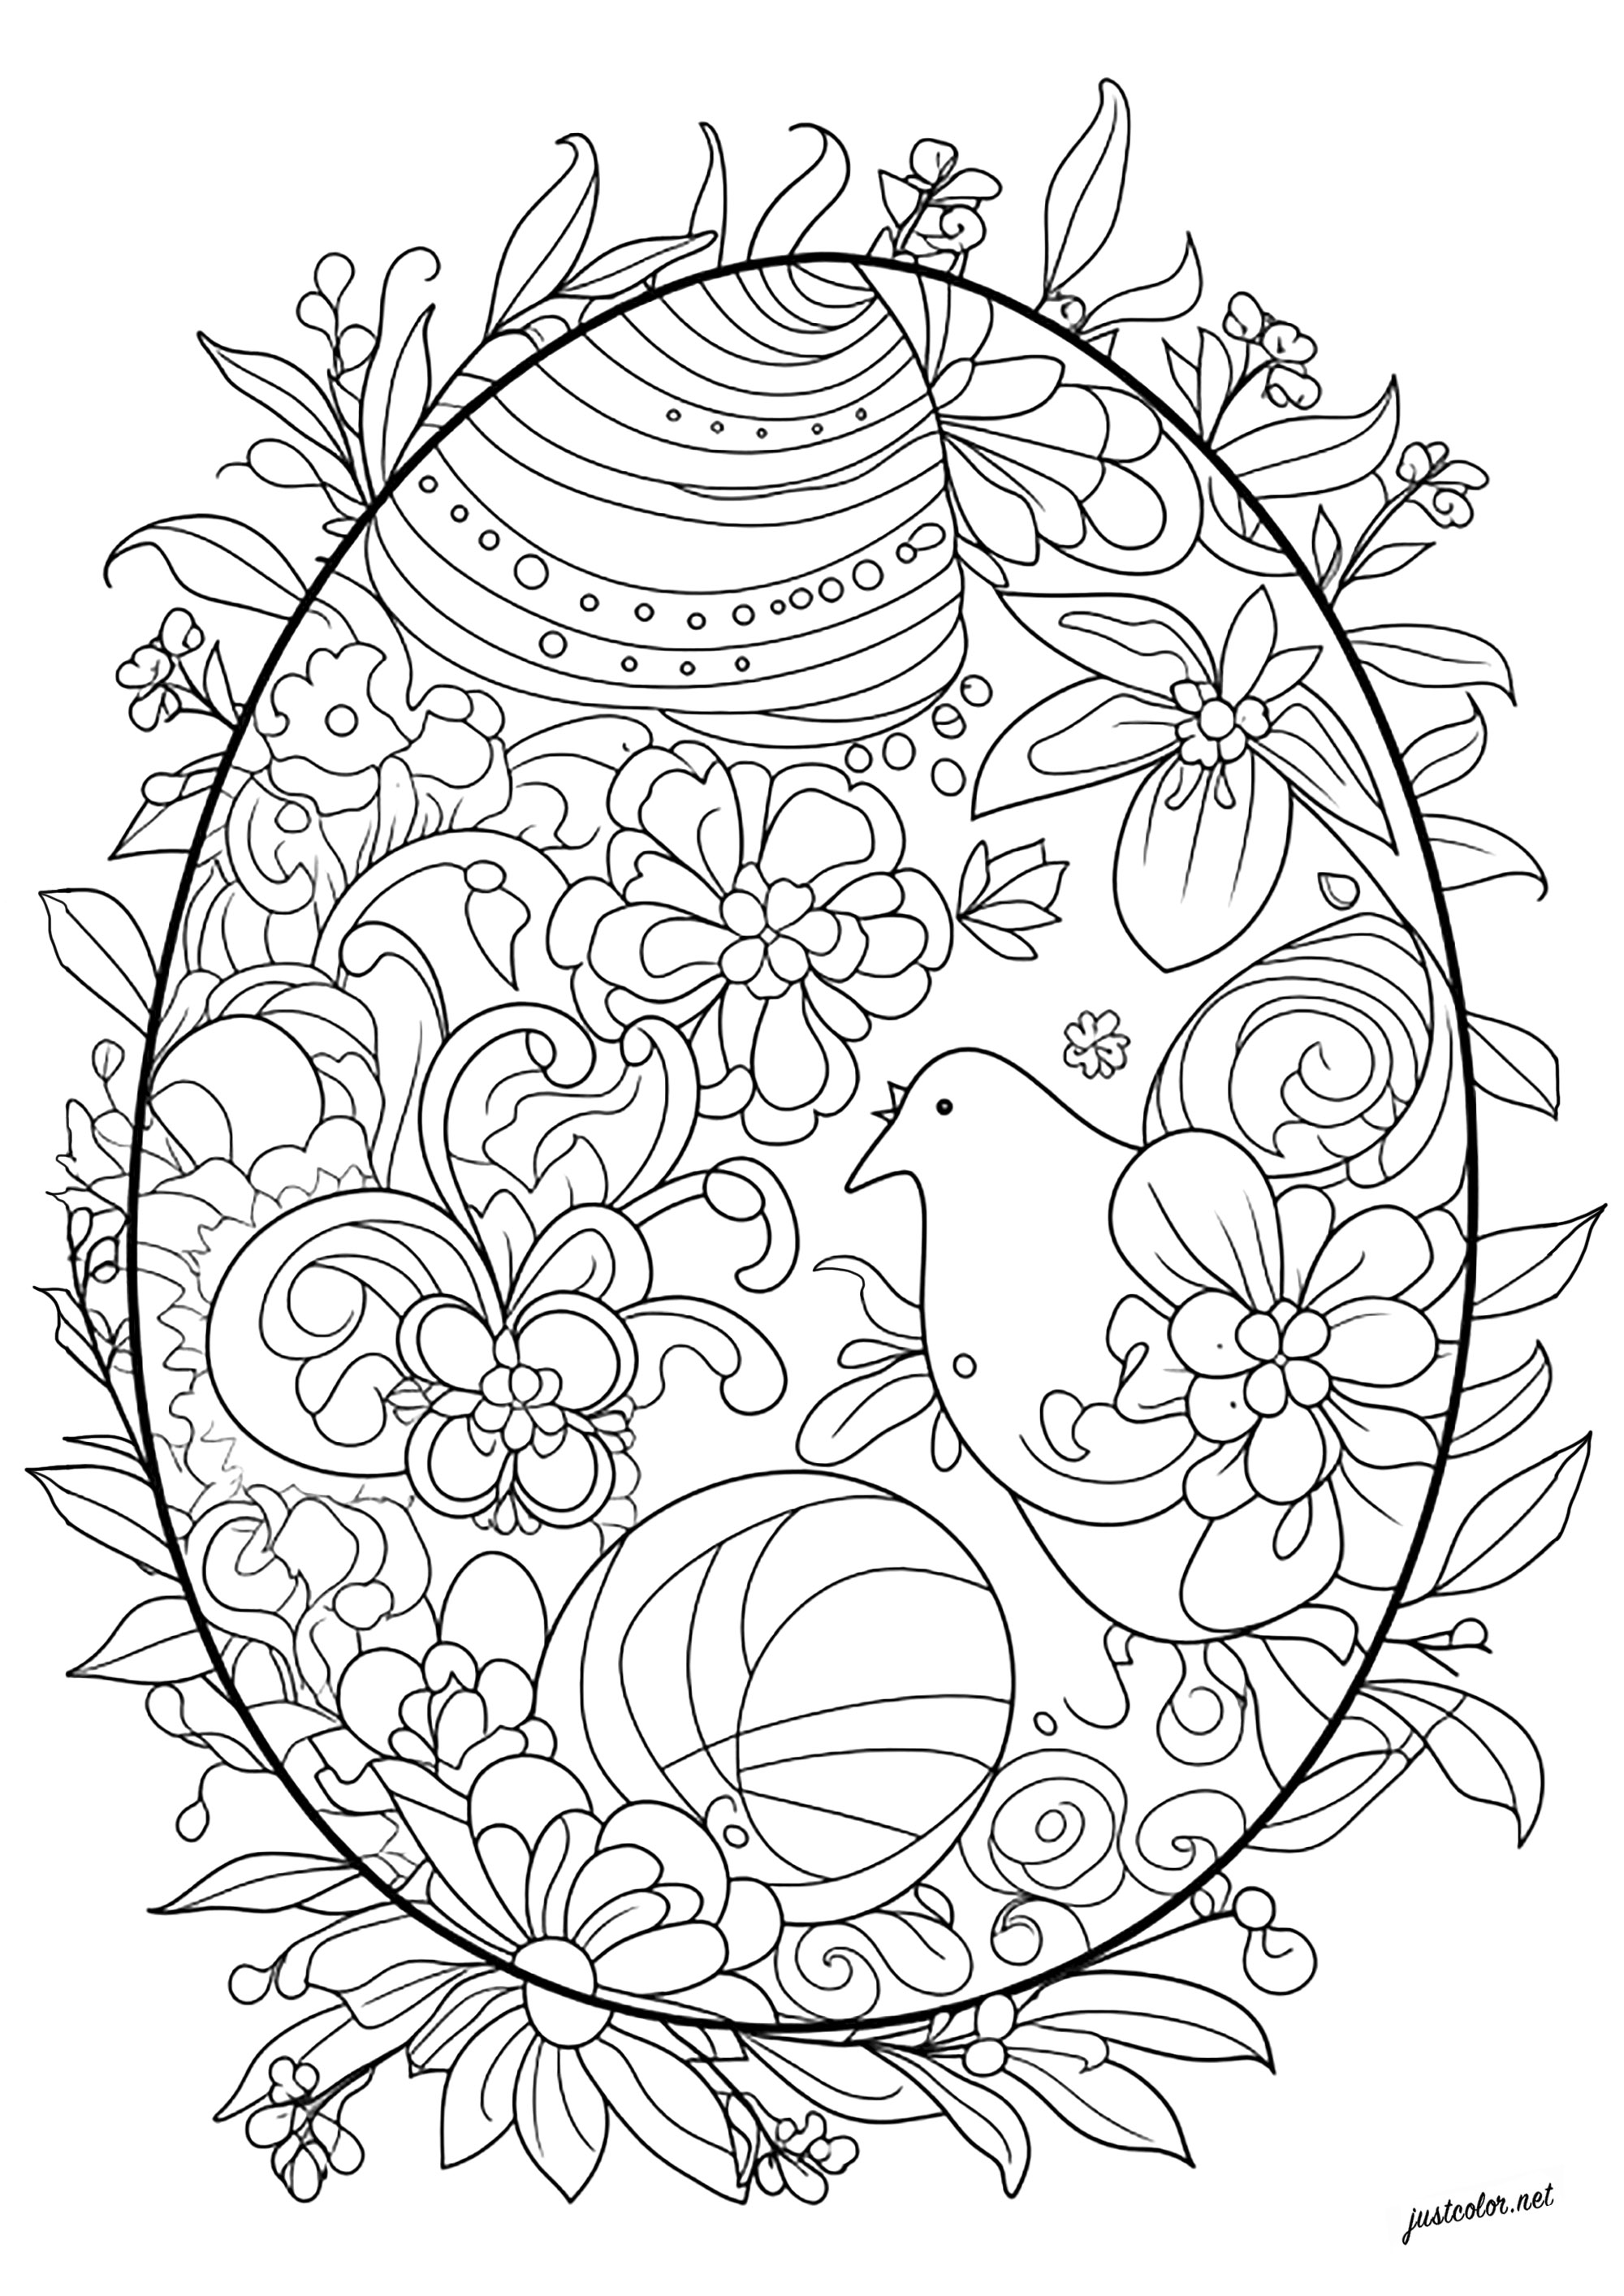 Coloração complexa de um ovo de PáscoaMuitos padrões abstractos, flores e até uma galinha para colorir neste belo ovo de Páscoa